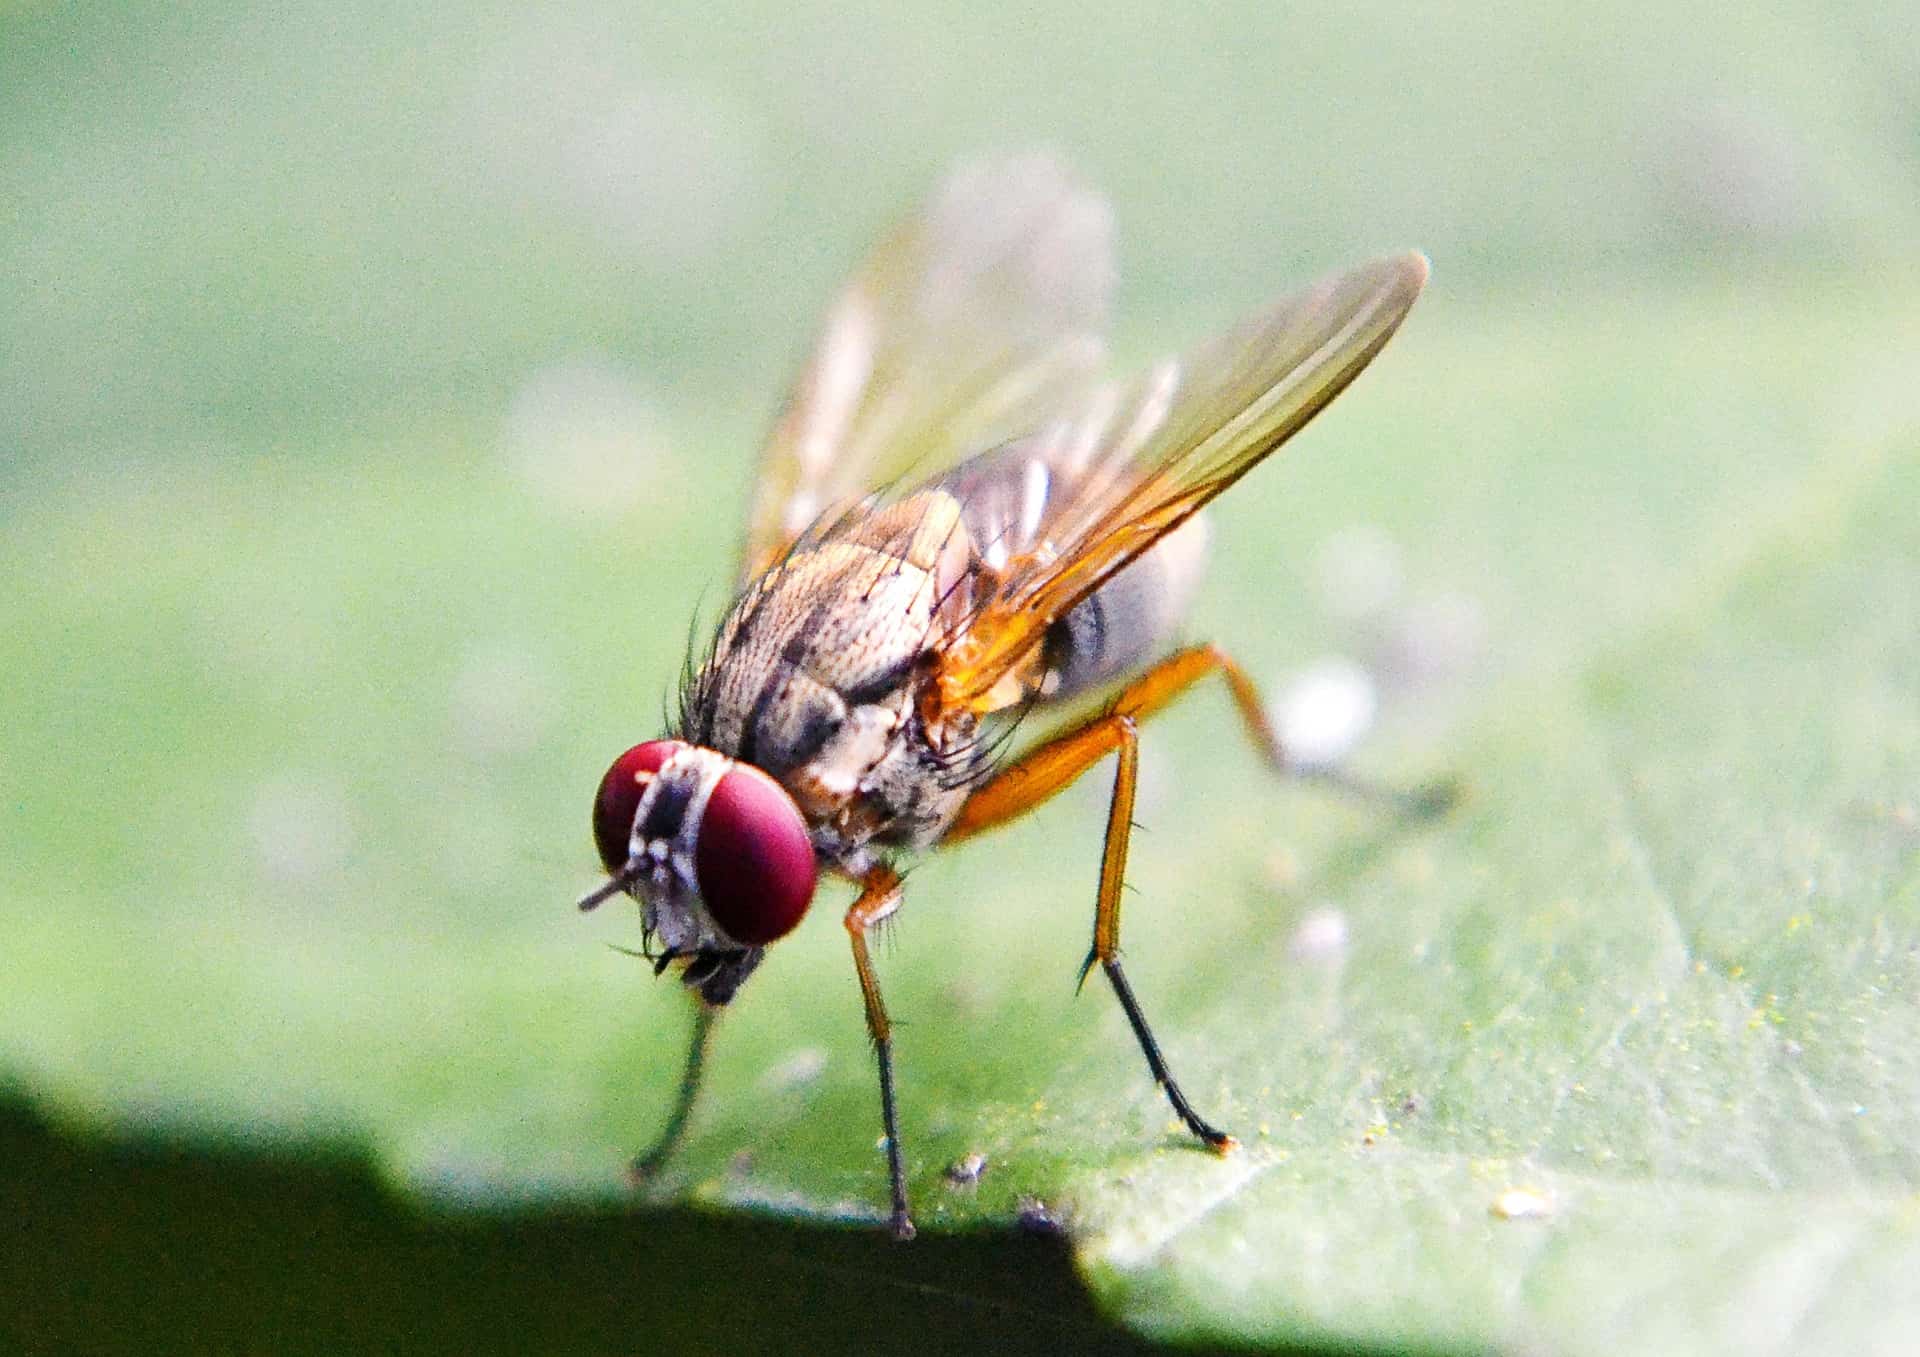 Closeup of fruit fly